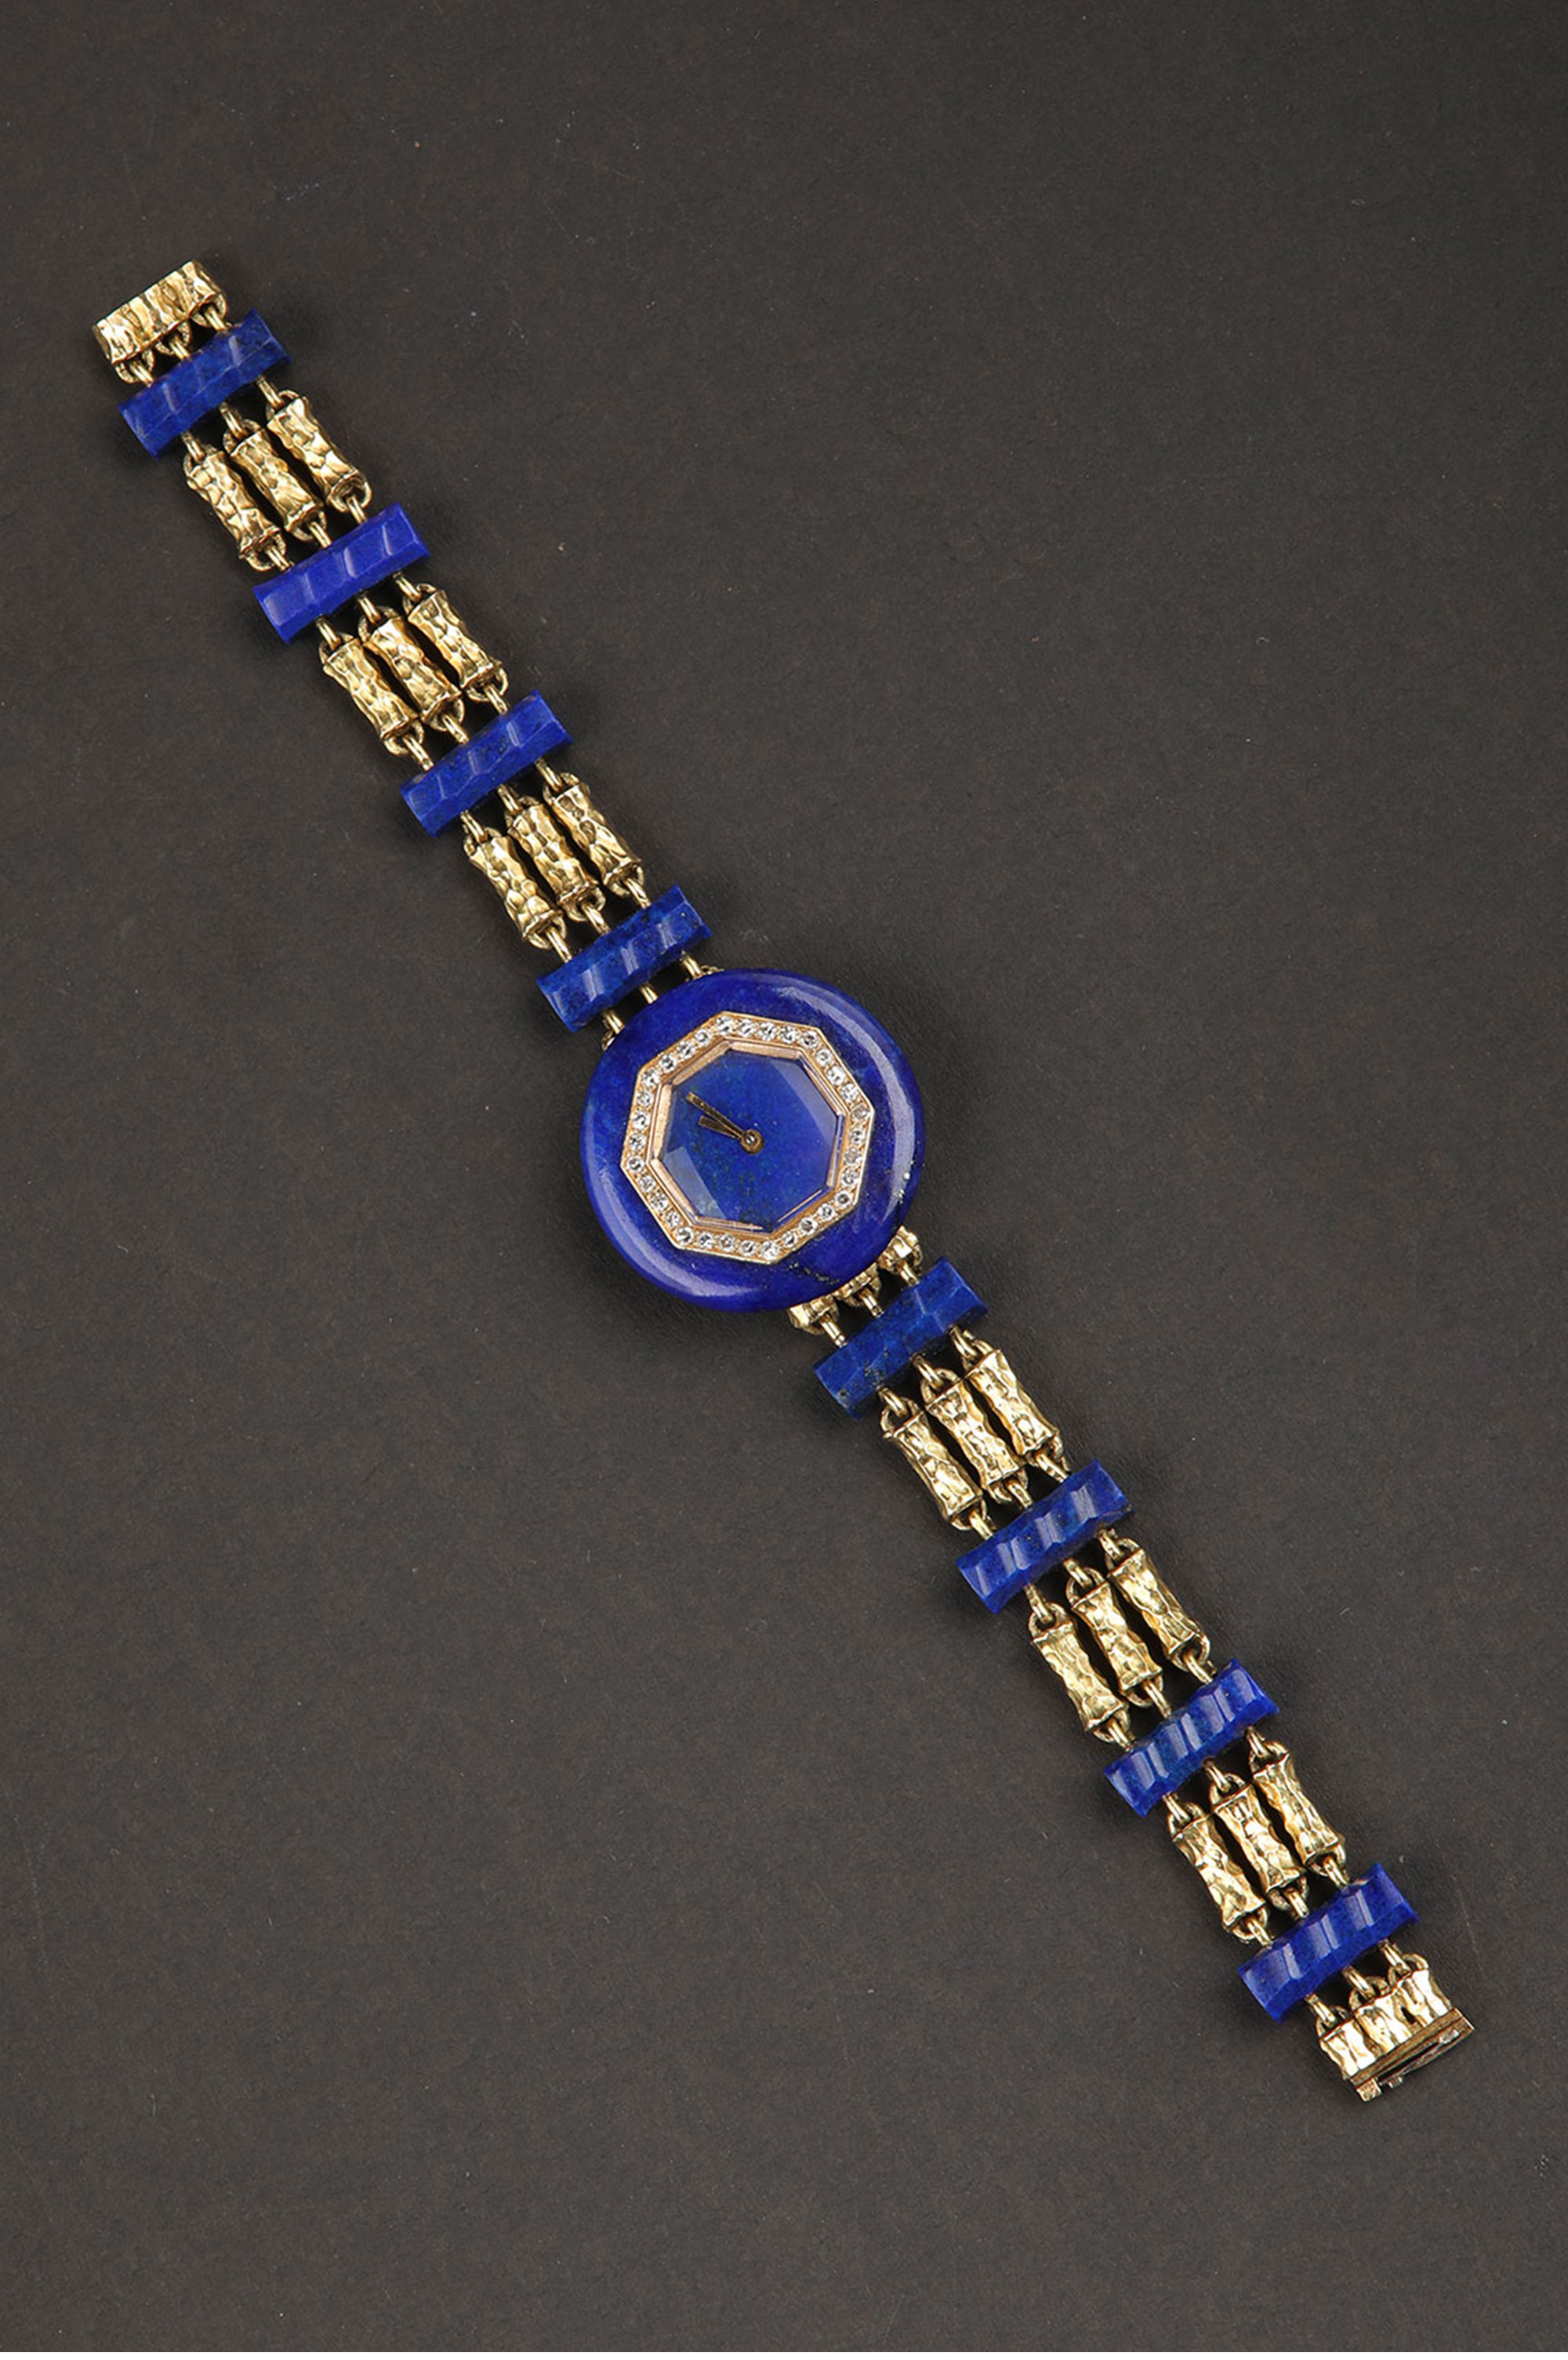 独角鹿西洋古董1950年代法国出品18K黄金镶嵌钻石青金石女士腕表